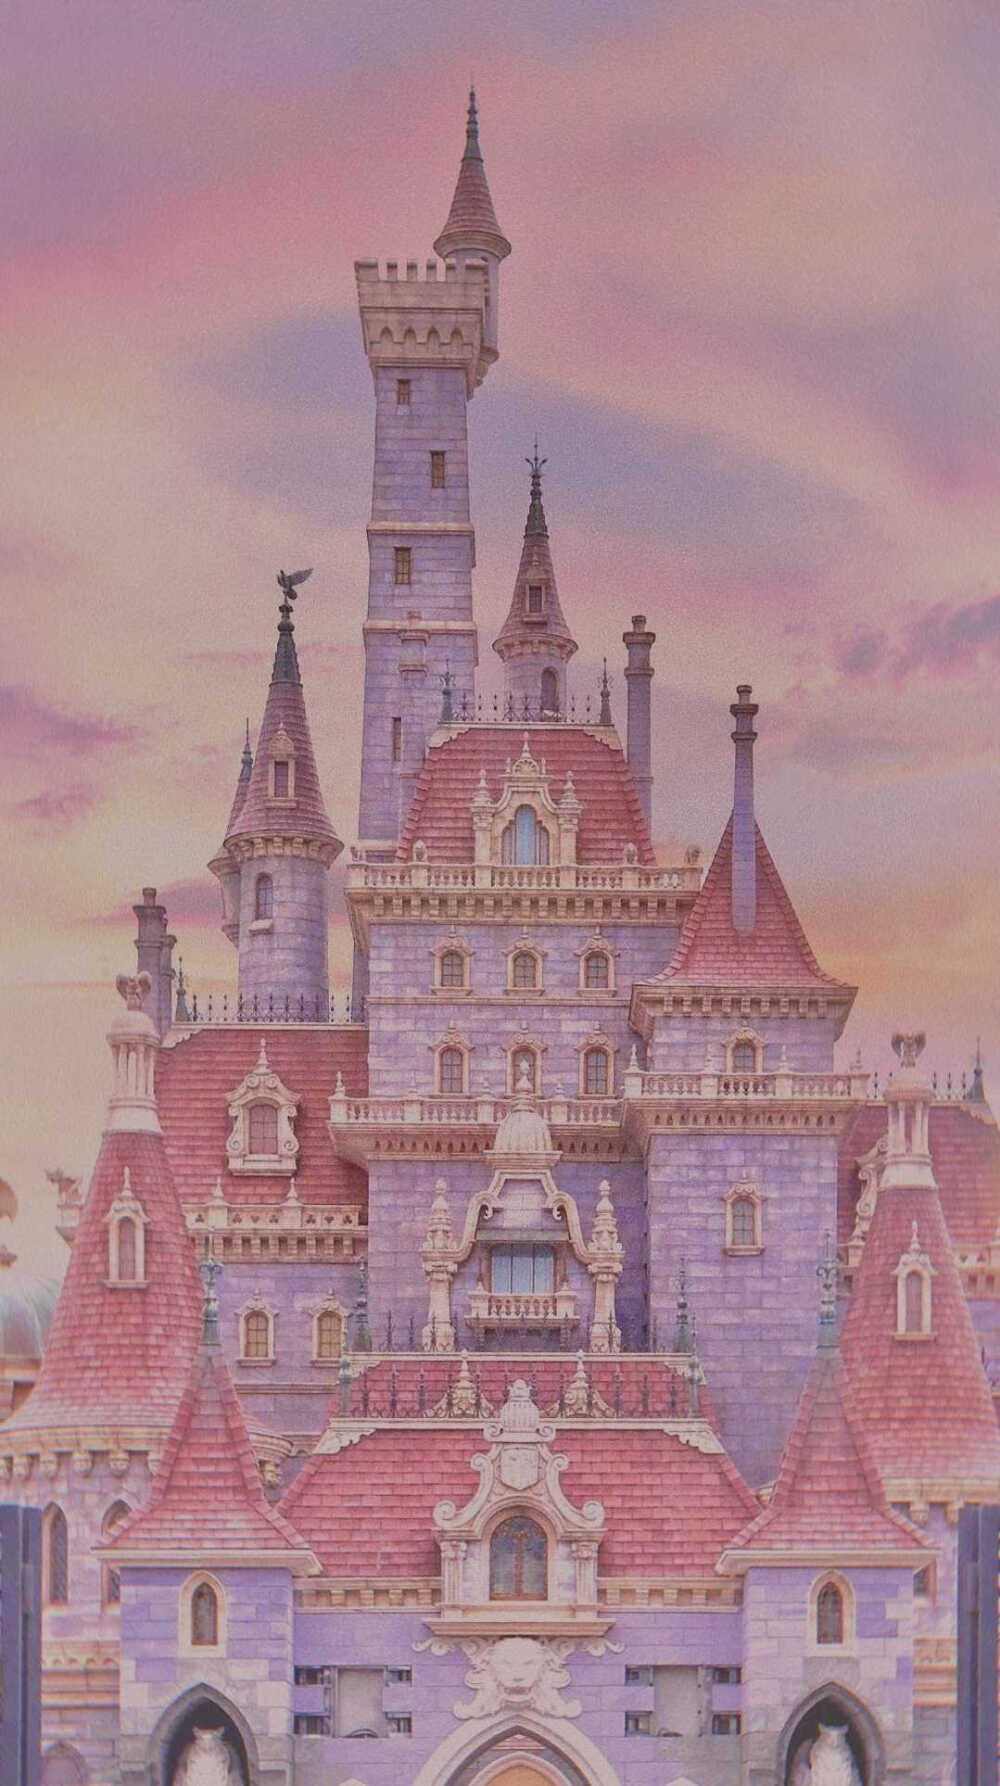 迪士尼城堡背景图高清壁纸免费下载 抖音迪士尼城堡背景图分享